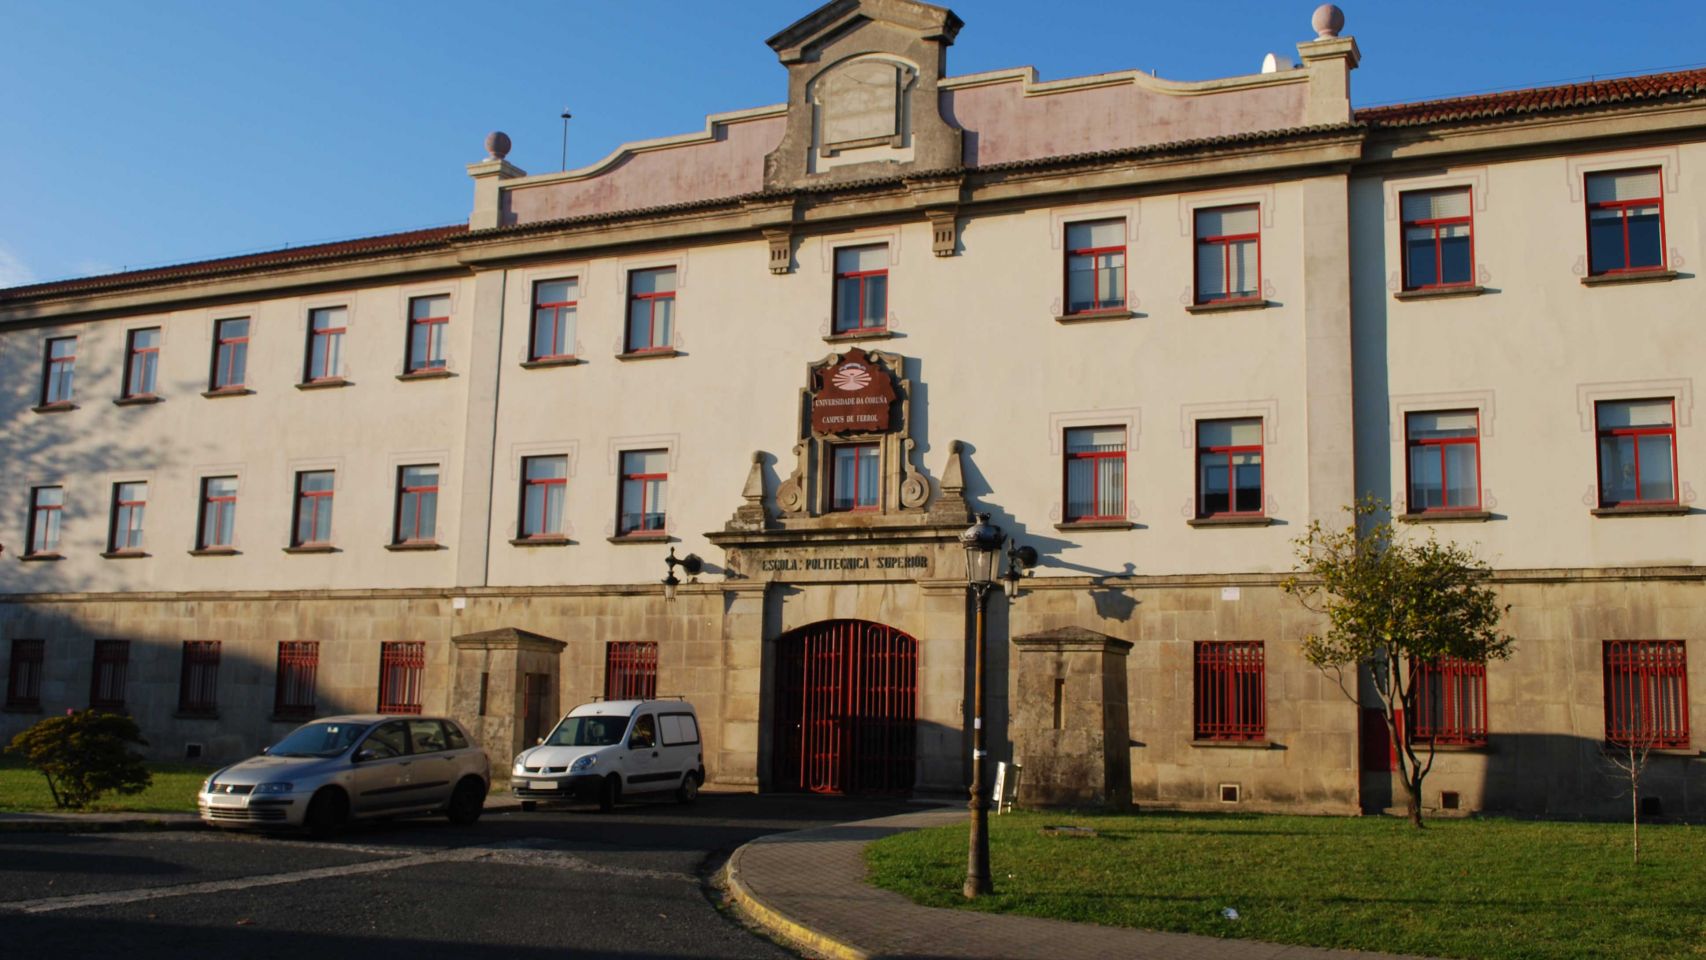 Escola Politécnica Superior de Ferrol